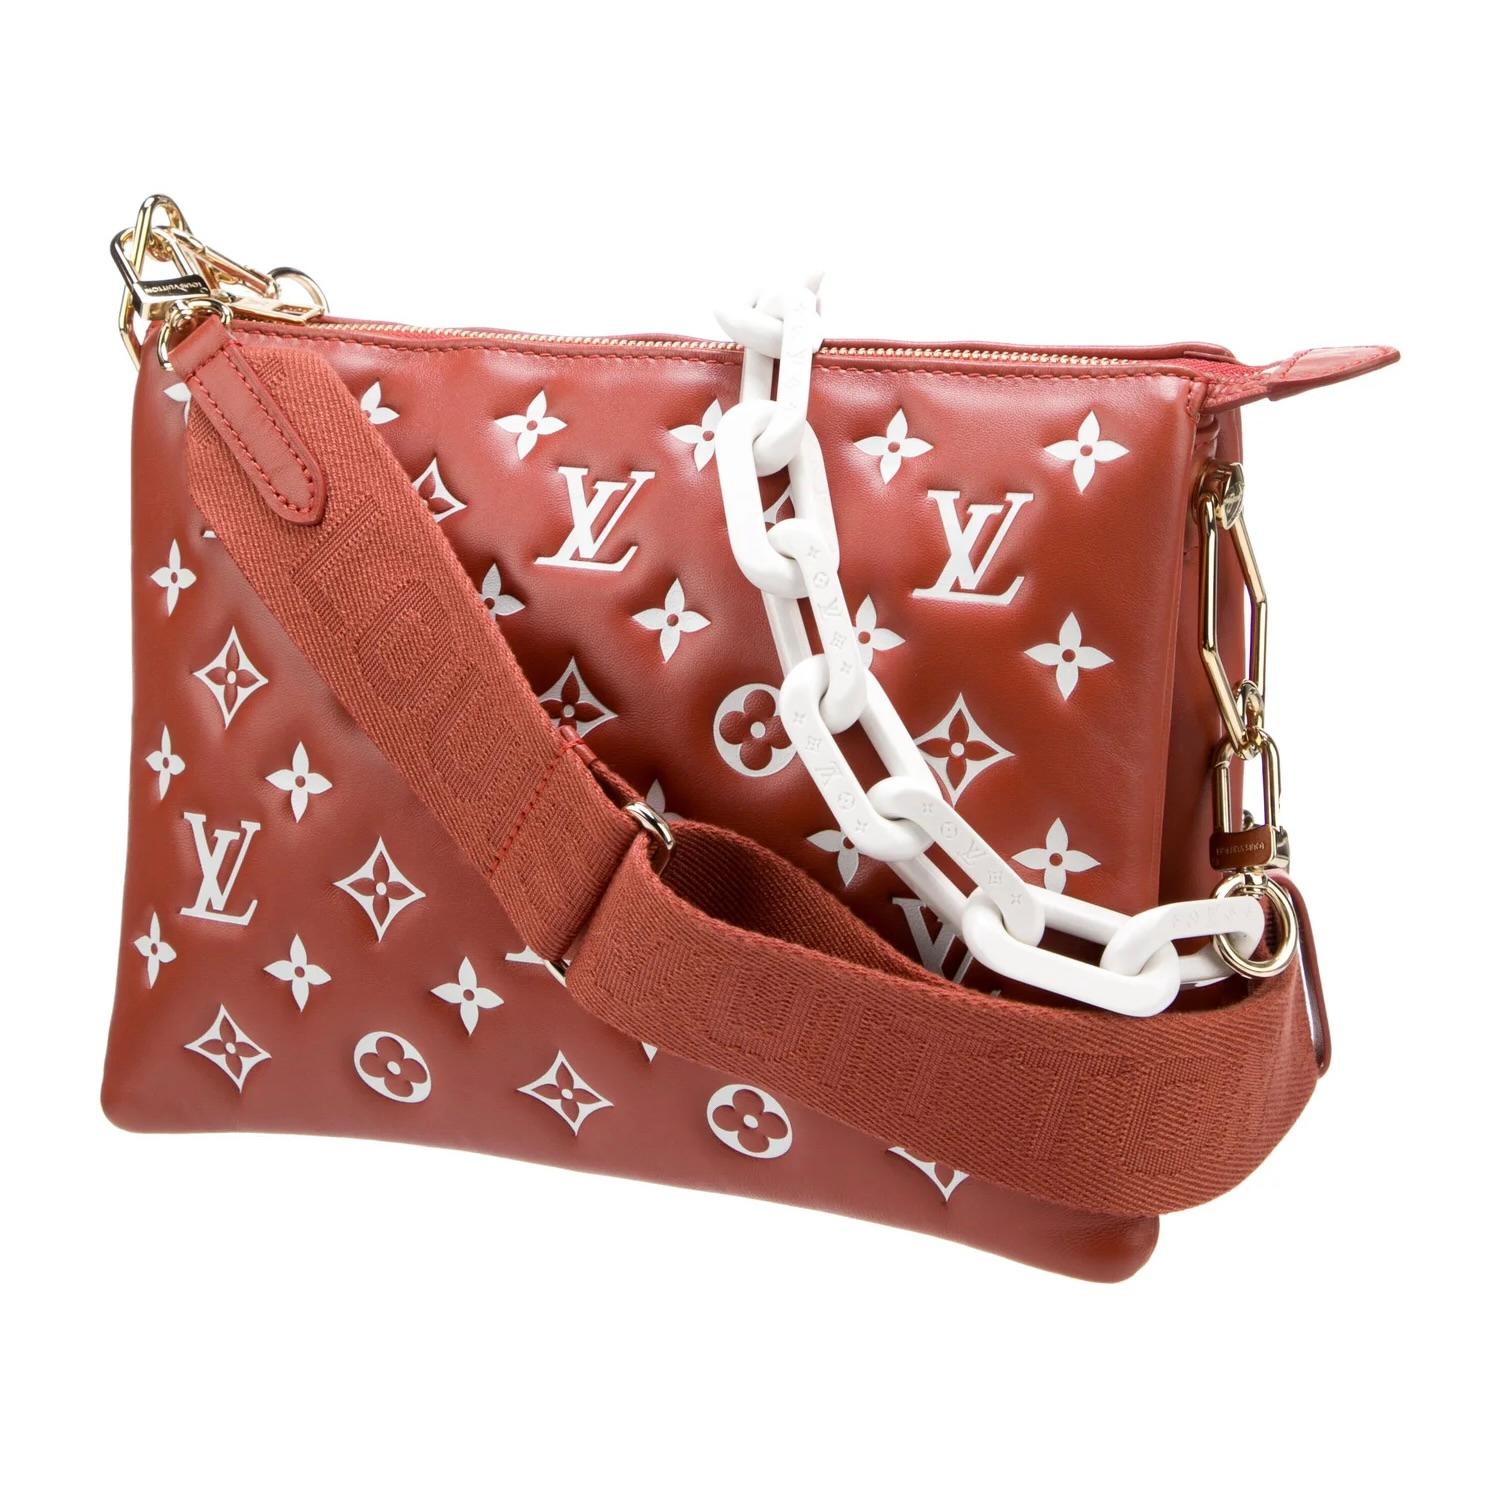 Diese Tasche stammt aus der Herbst/Winter-Kollektion 2022 von Louis Vuitton, bei der die ikonischen Logoprints im Mittelpunkt stehen, so auch bei dieser Crossbody-Bag. Die Tasche ist aus weichem und geschmeidigem Lammleder in Rot mit weißem